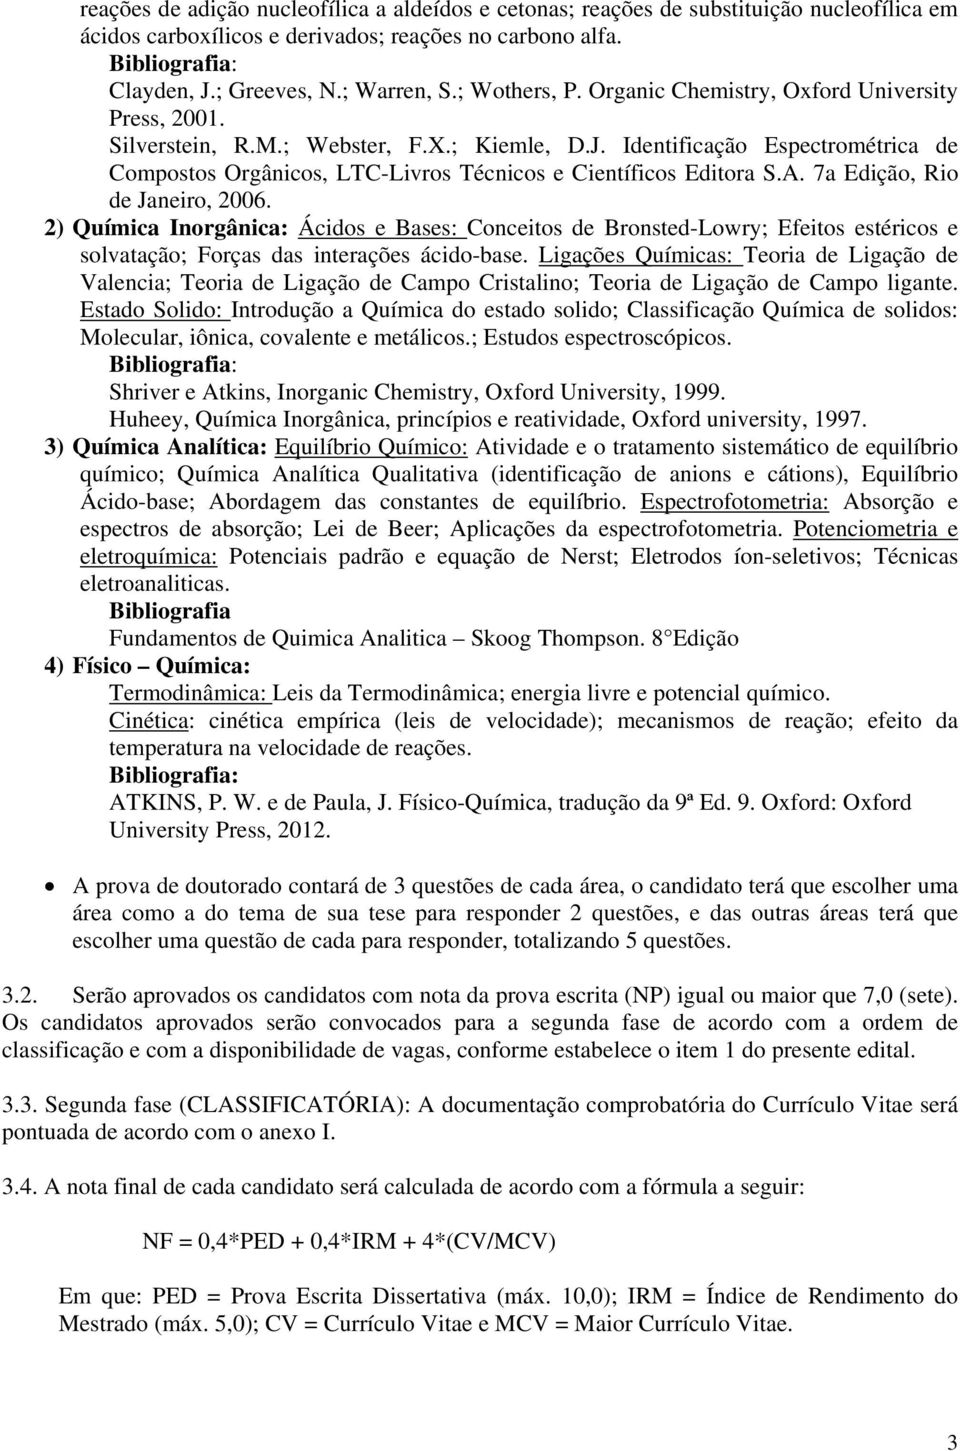 Identificação Espectrométrica de Compostos Orgânicos, LTC-Livros Técnicos e Científicos Editora S.A. 7a Edição, Rio de Janeiro, 2006.